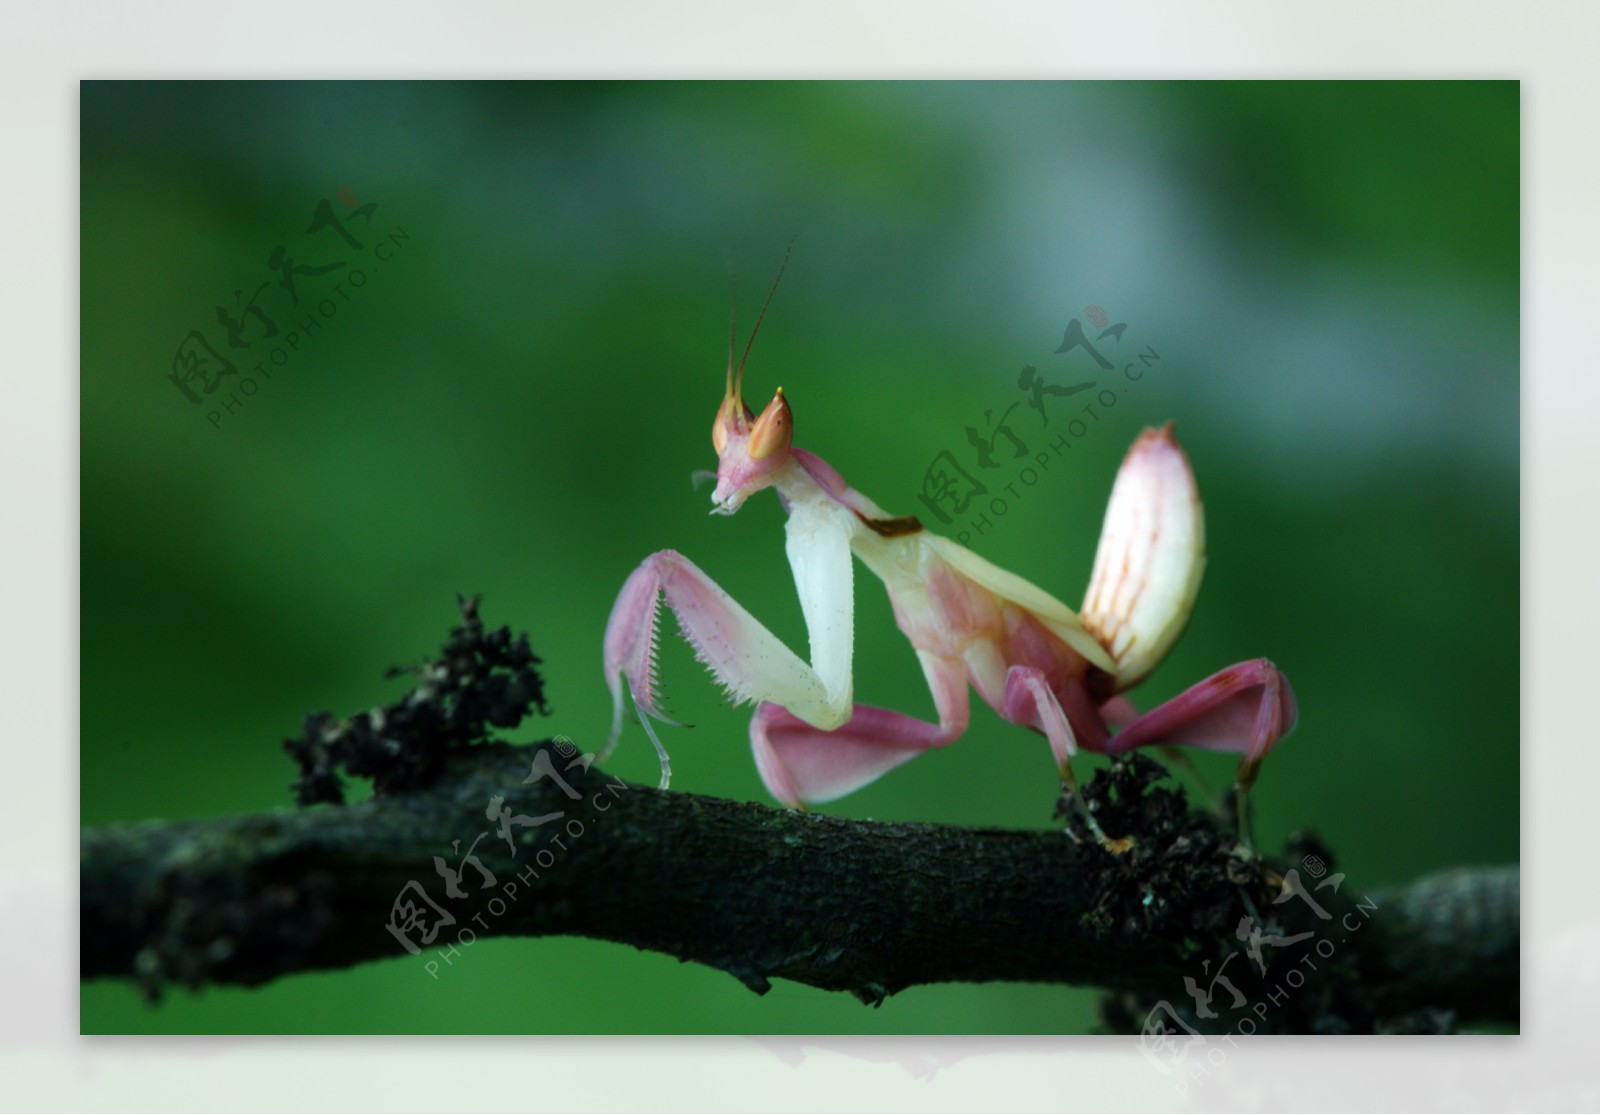 兰花螳螂图片